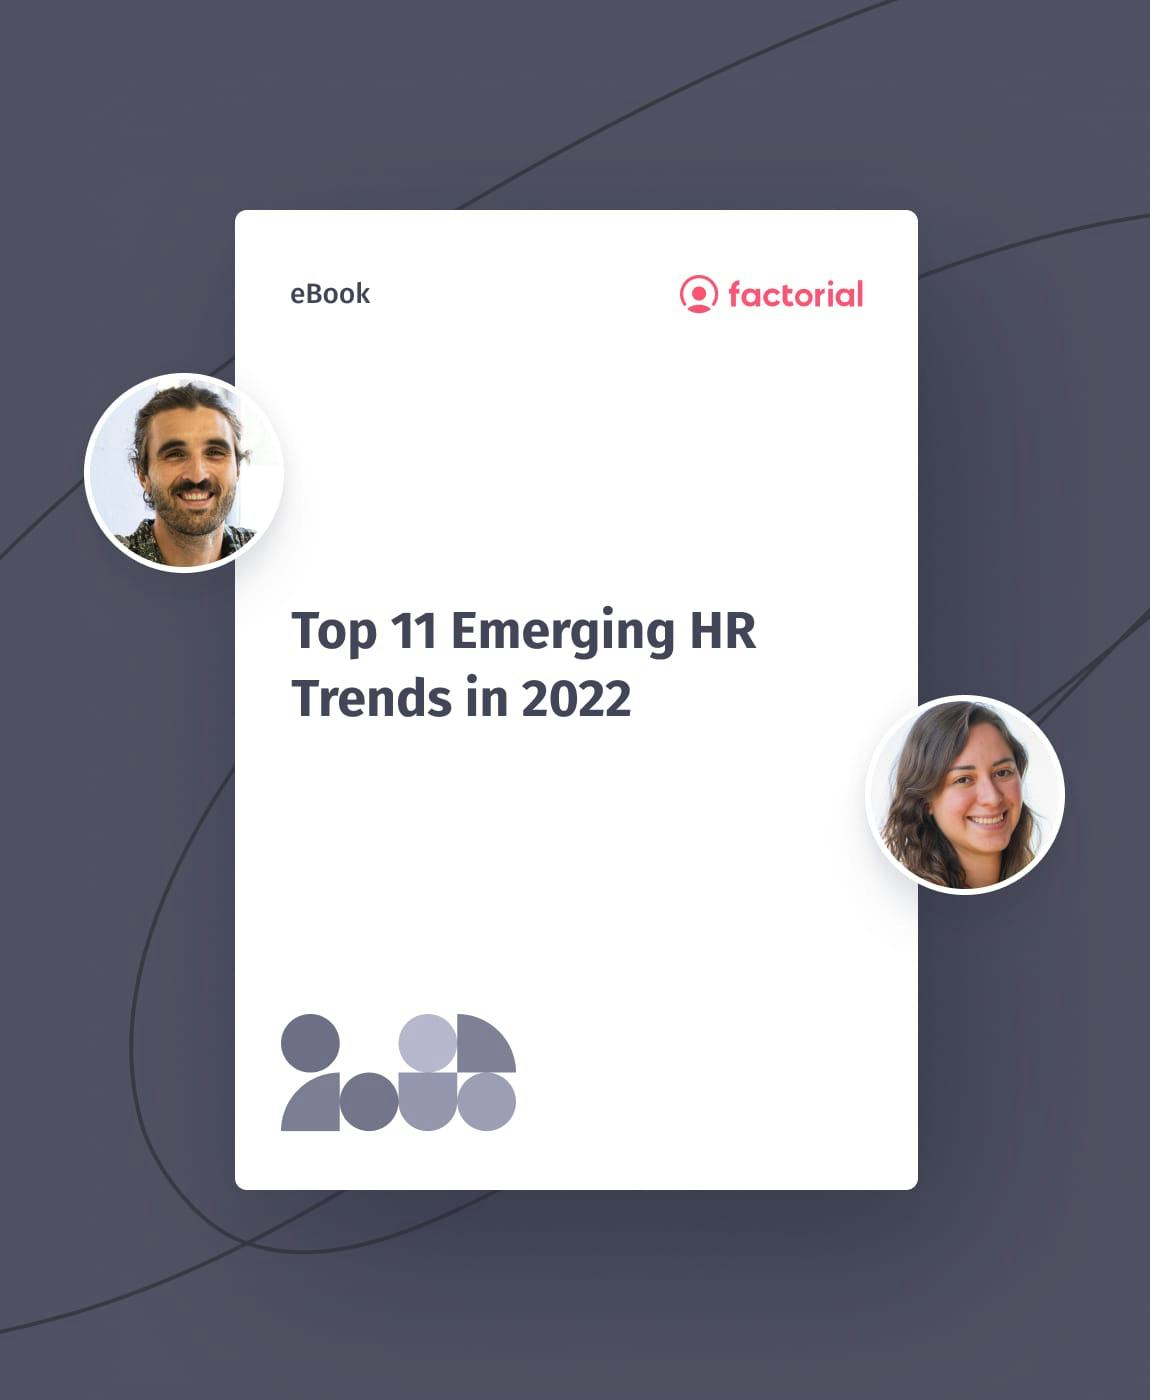 Top 11 Emerging HR Trends in 2022